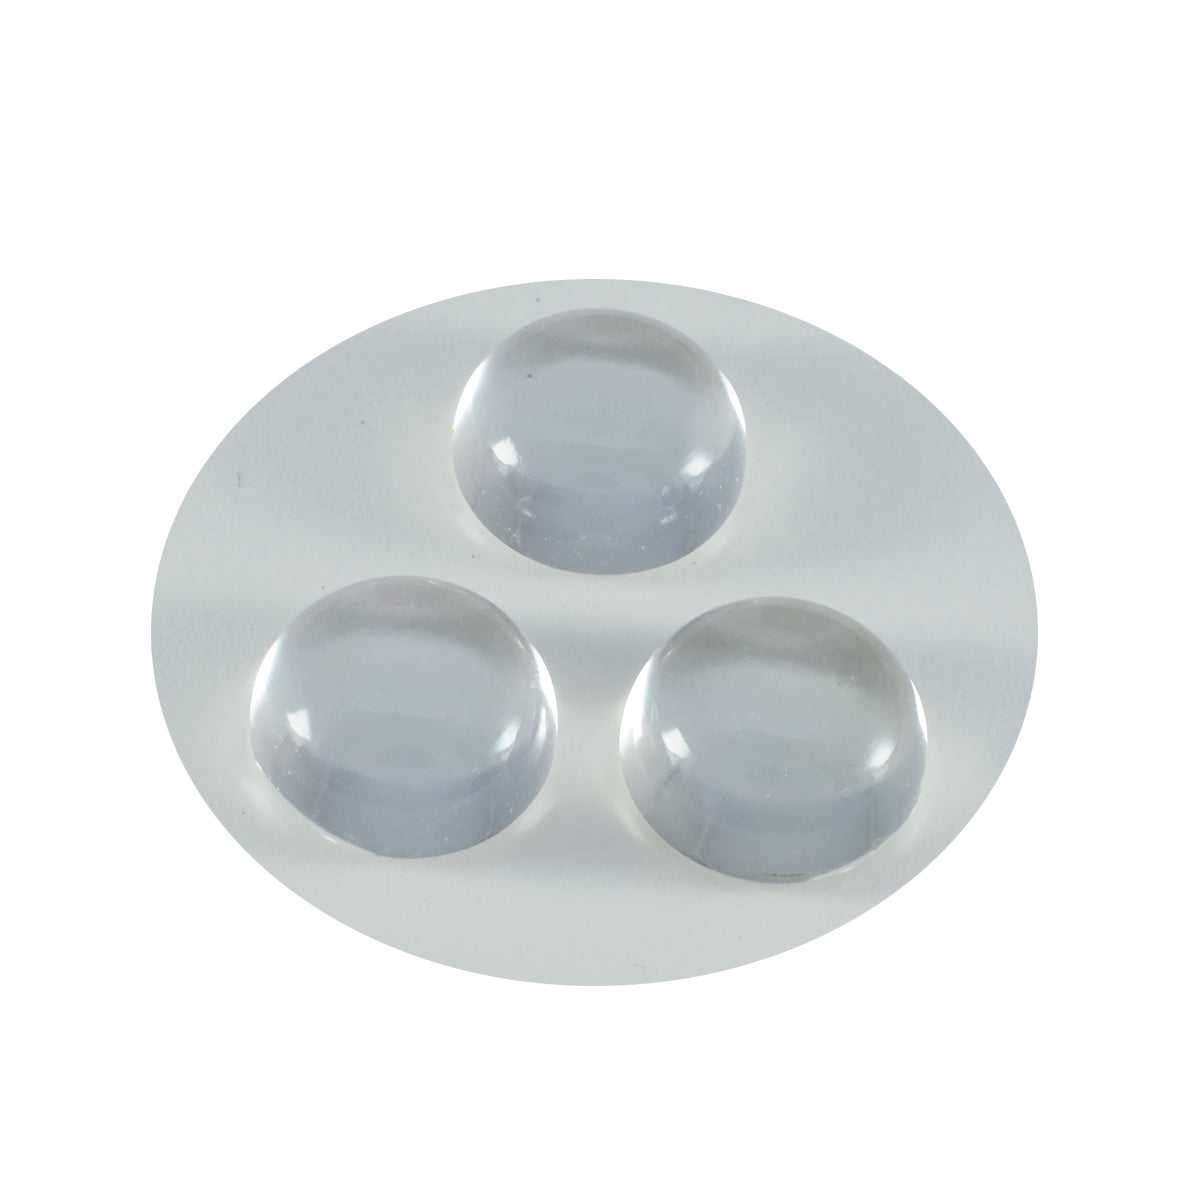 riyogems 1 шт., белый кристалл кварца, кабошон 11x11 мм, круглая форма, красивое качество, свободный драгоценный камень